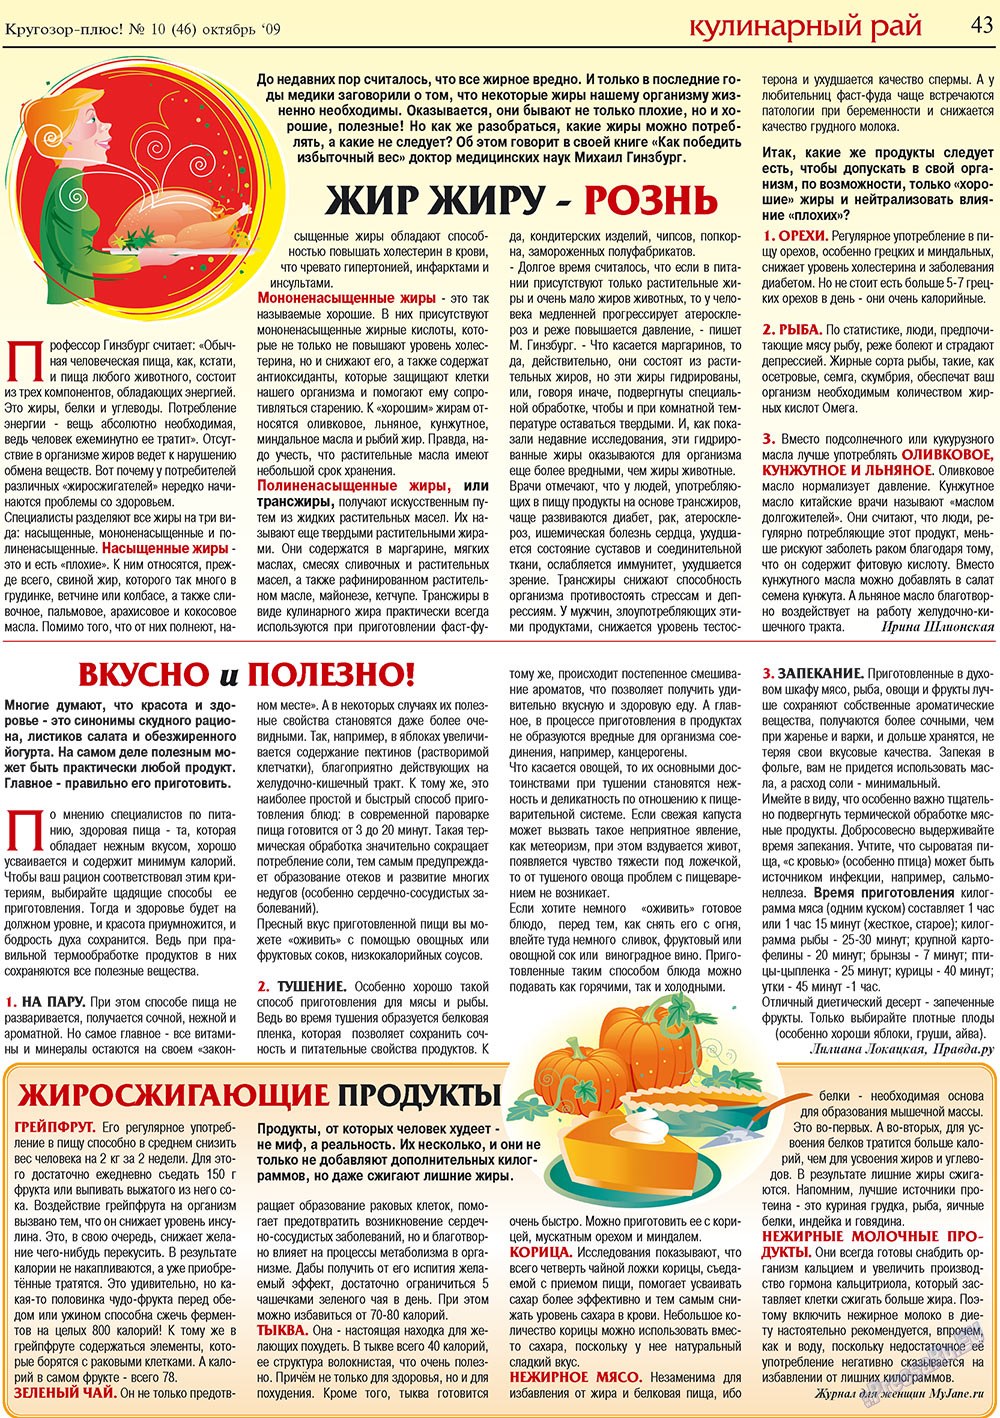 Кругозор плюс!, газета. 2009 №10 стр.43